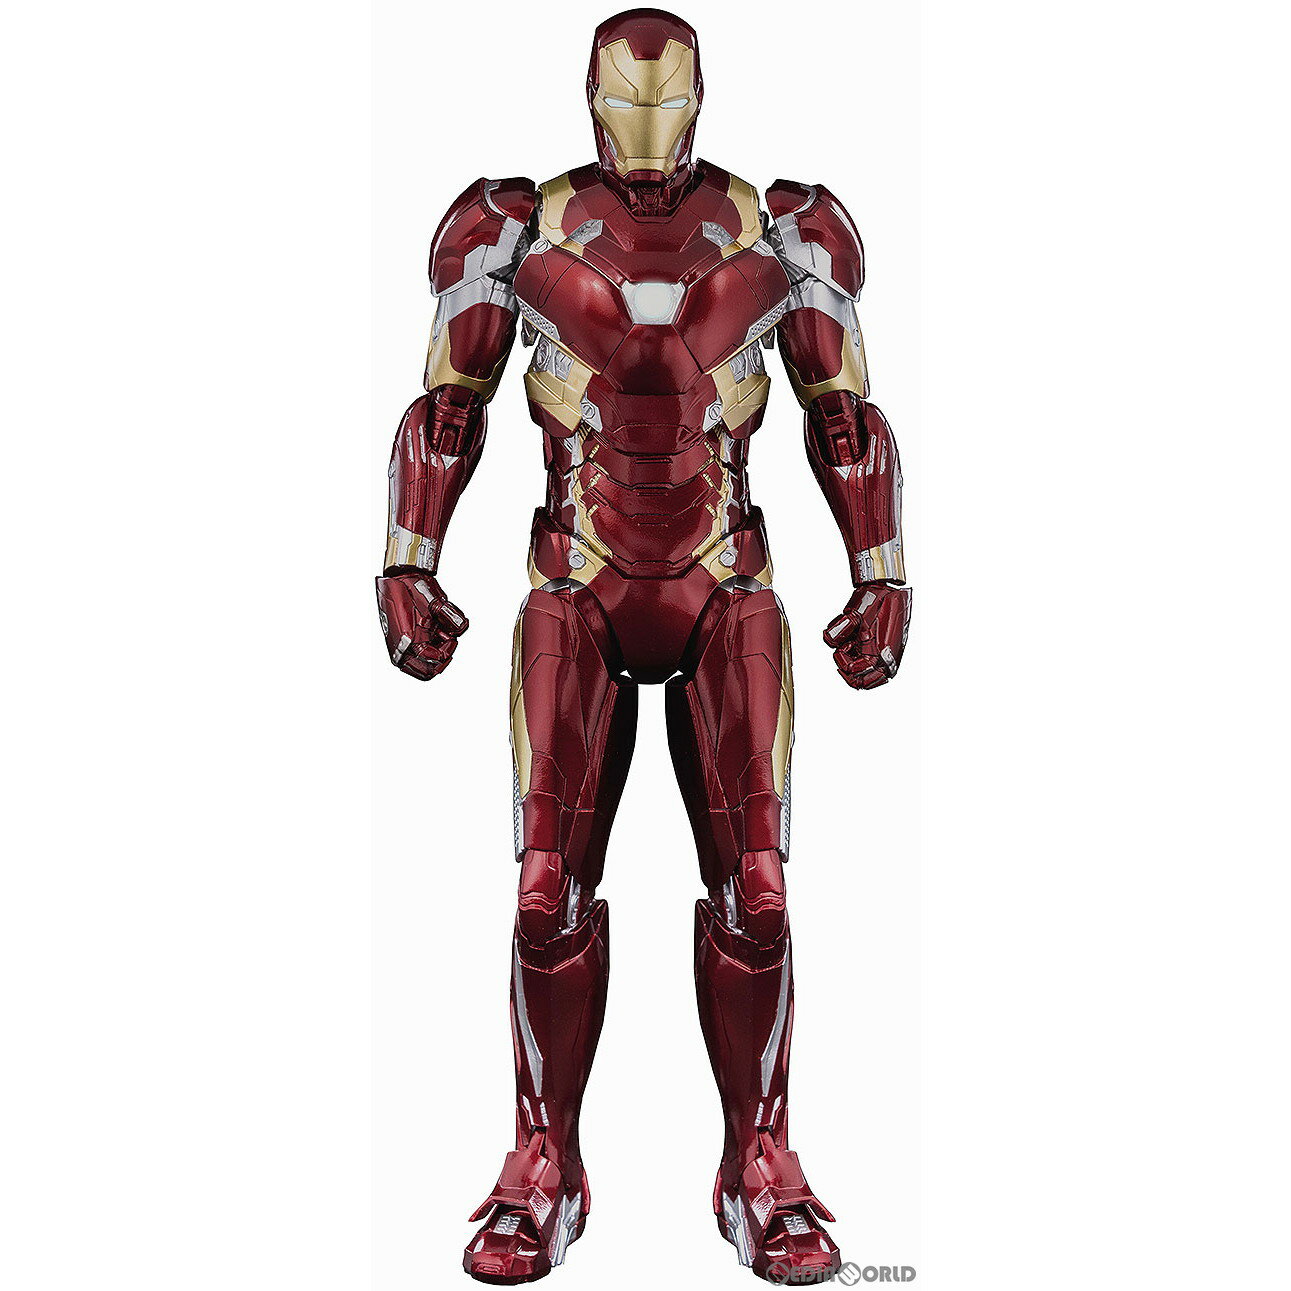 【中古】 FIG DLX Iron Man Mark 46(DLX アイアンマン マーク46) Marvel Studios 039 The Infinity Saga(マーベル スタジオ『インフィニティ サーガ』) 1/12 完成品 可動フィギュア threezero(スリーゼロ)(20221102)